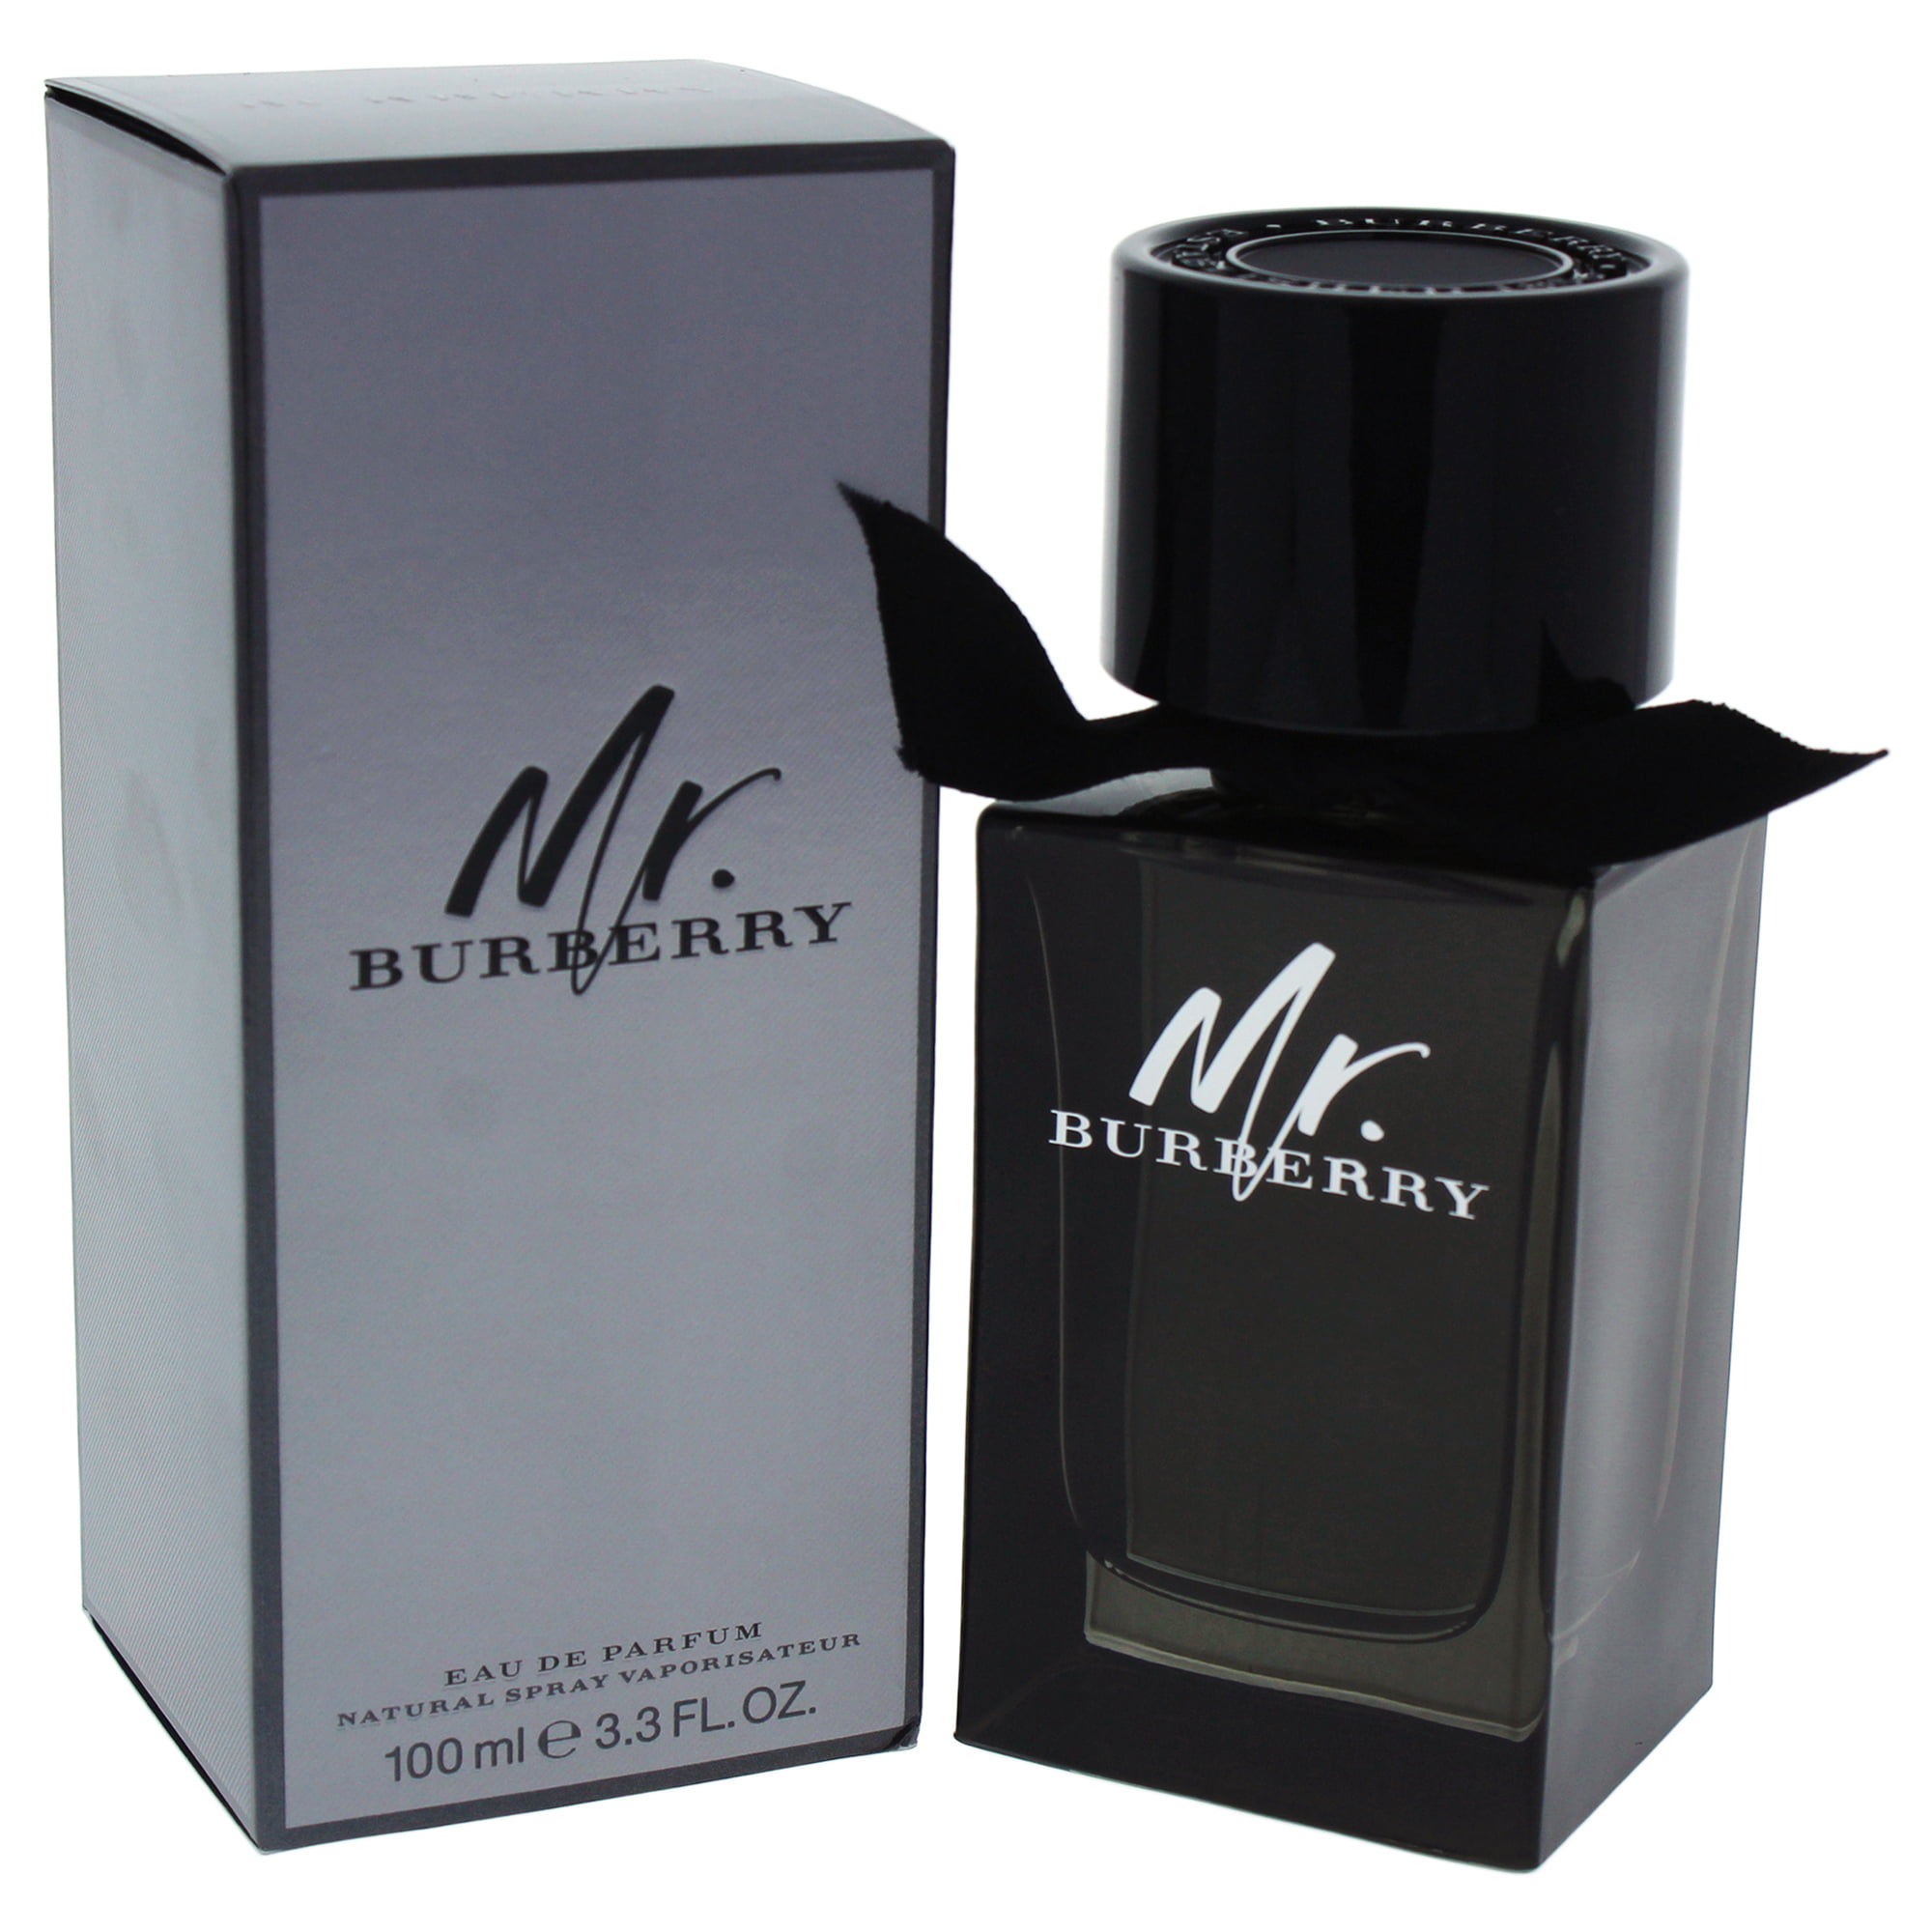 Give Elskede bord Burberry Mr. Burberry Eau de Parfum, Cologne for Men, 3.3 Oz - Walmart.com